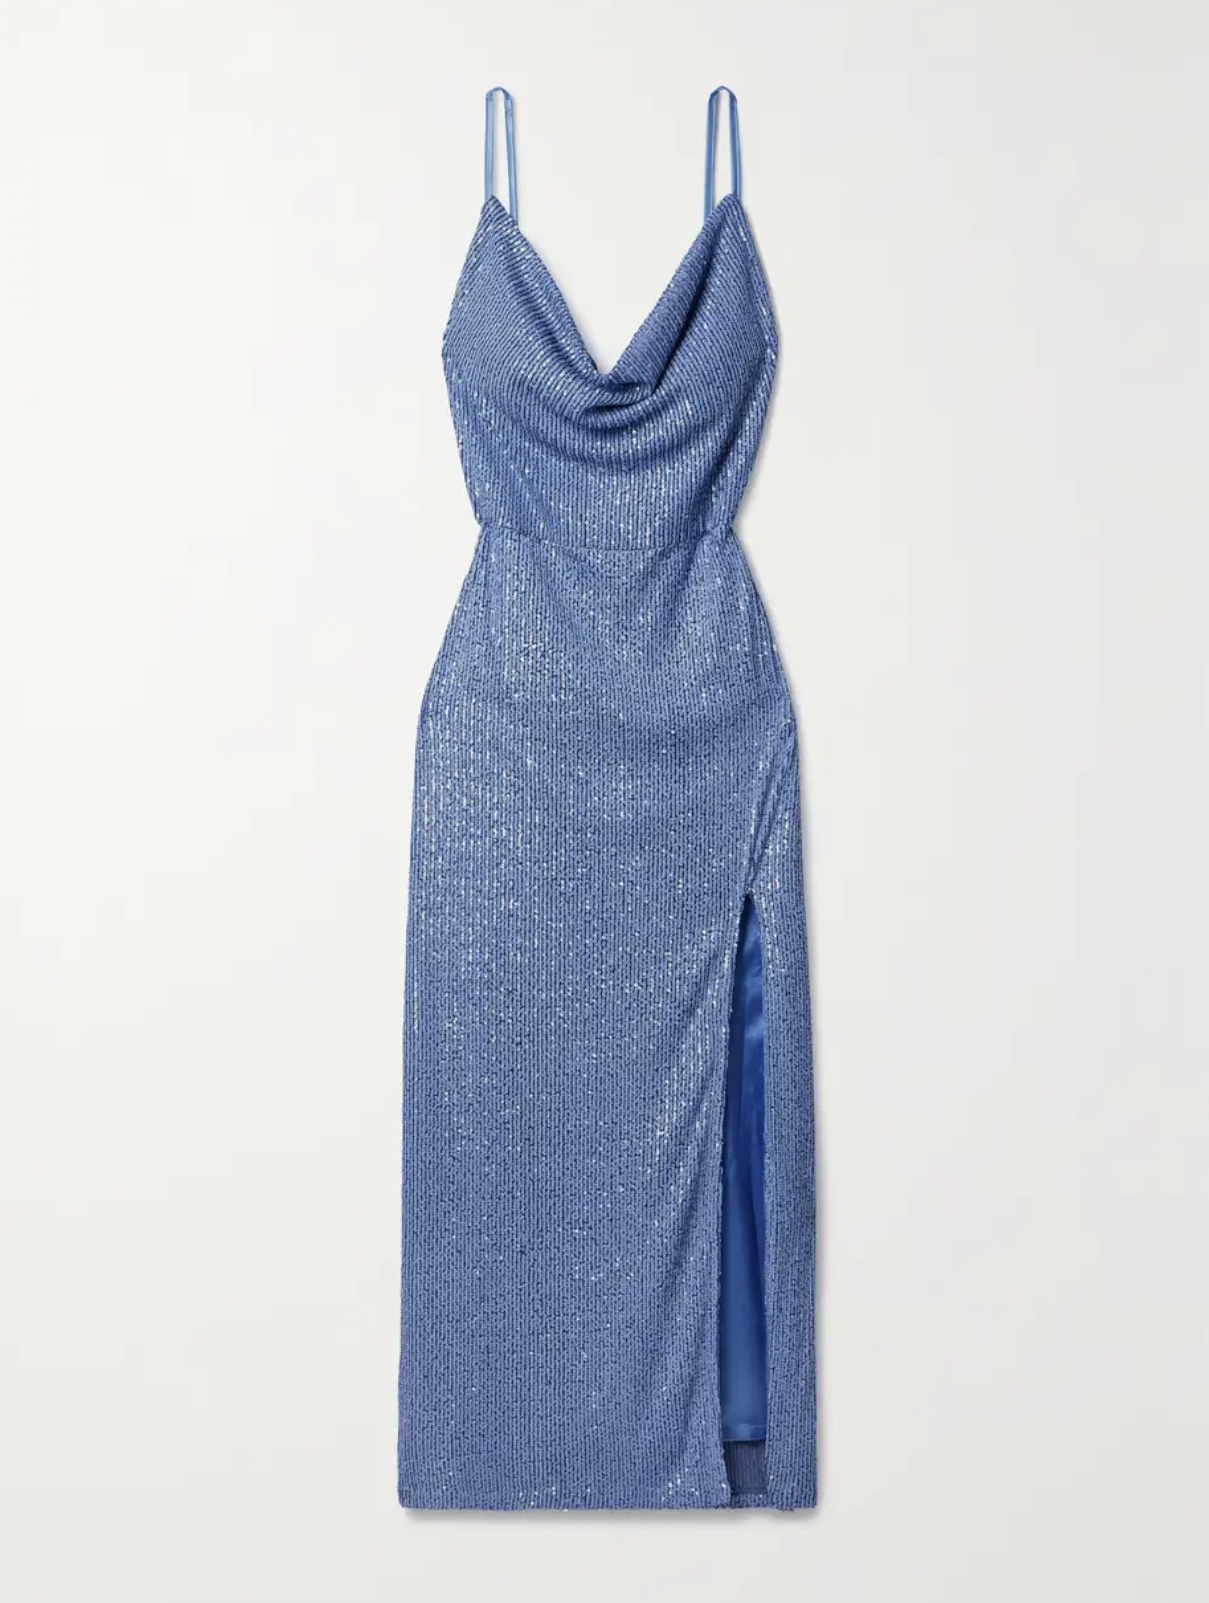 Где найти длинное голубое платье как у Виктории Бекхэм?